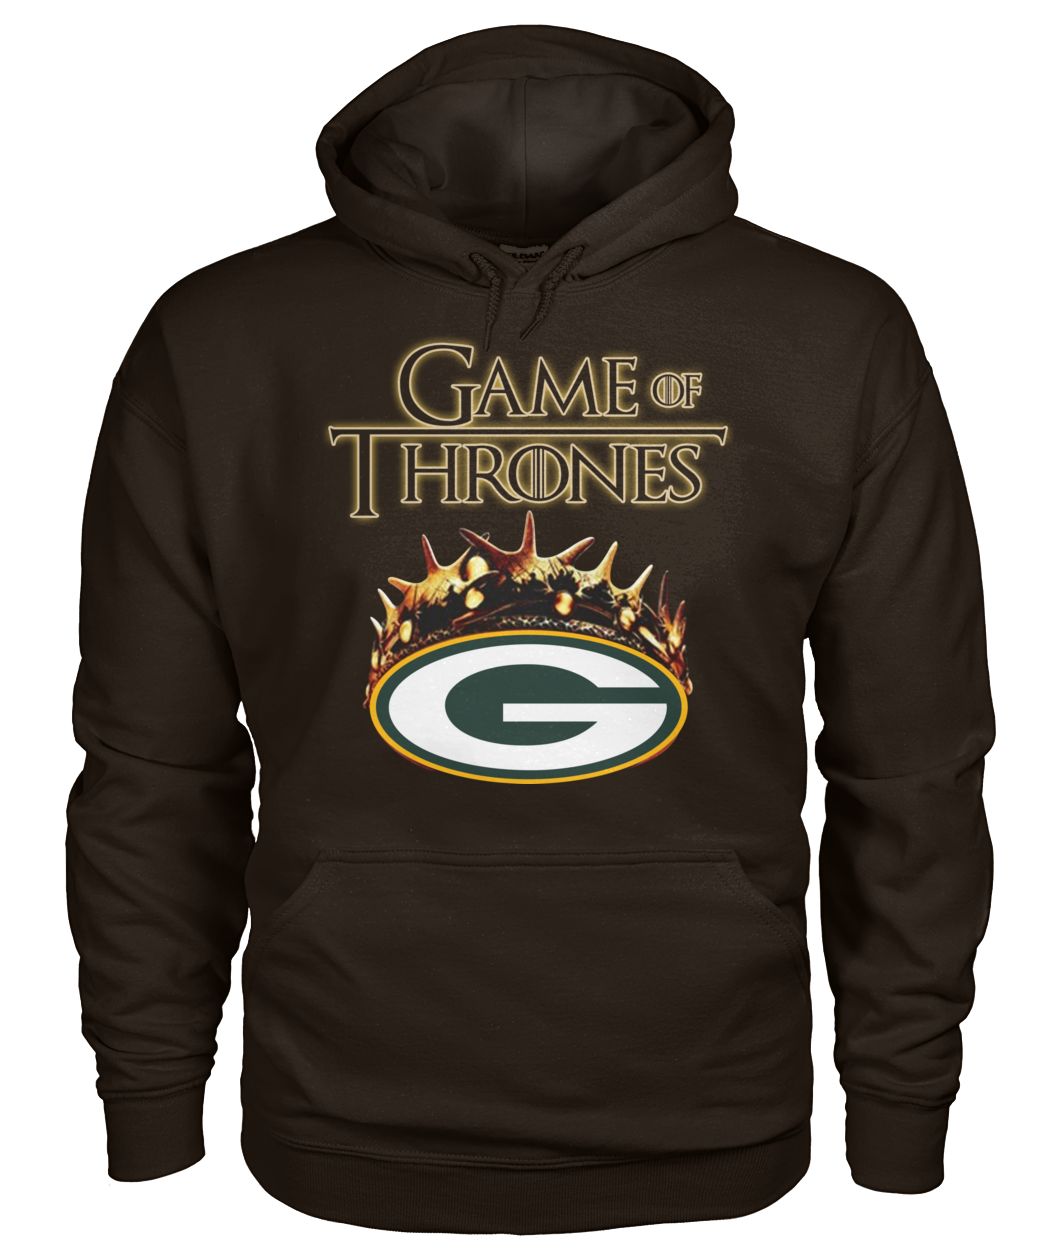 Game of thrones crown green bay packers gildan hoodie